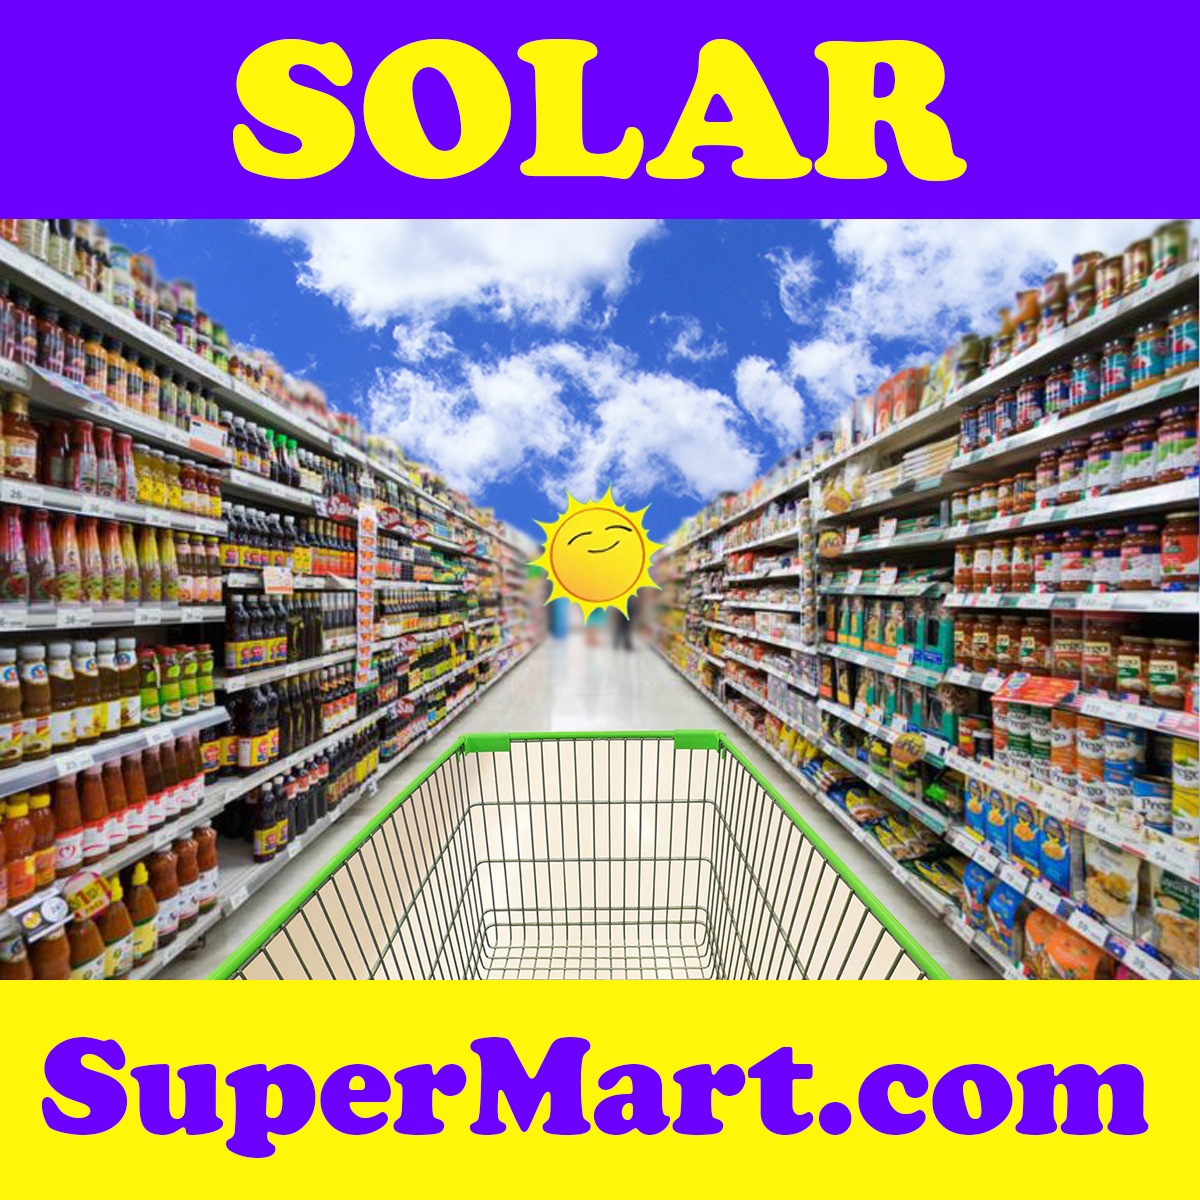 SolarSuperMart.com